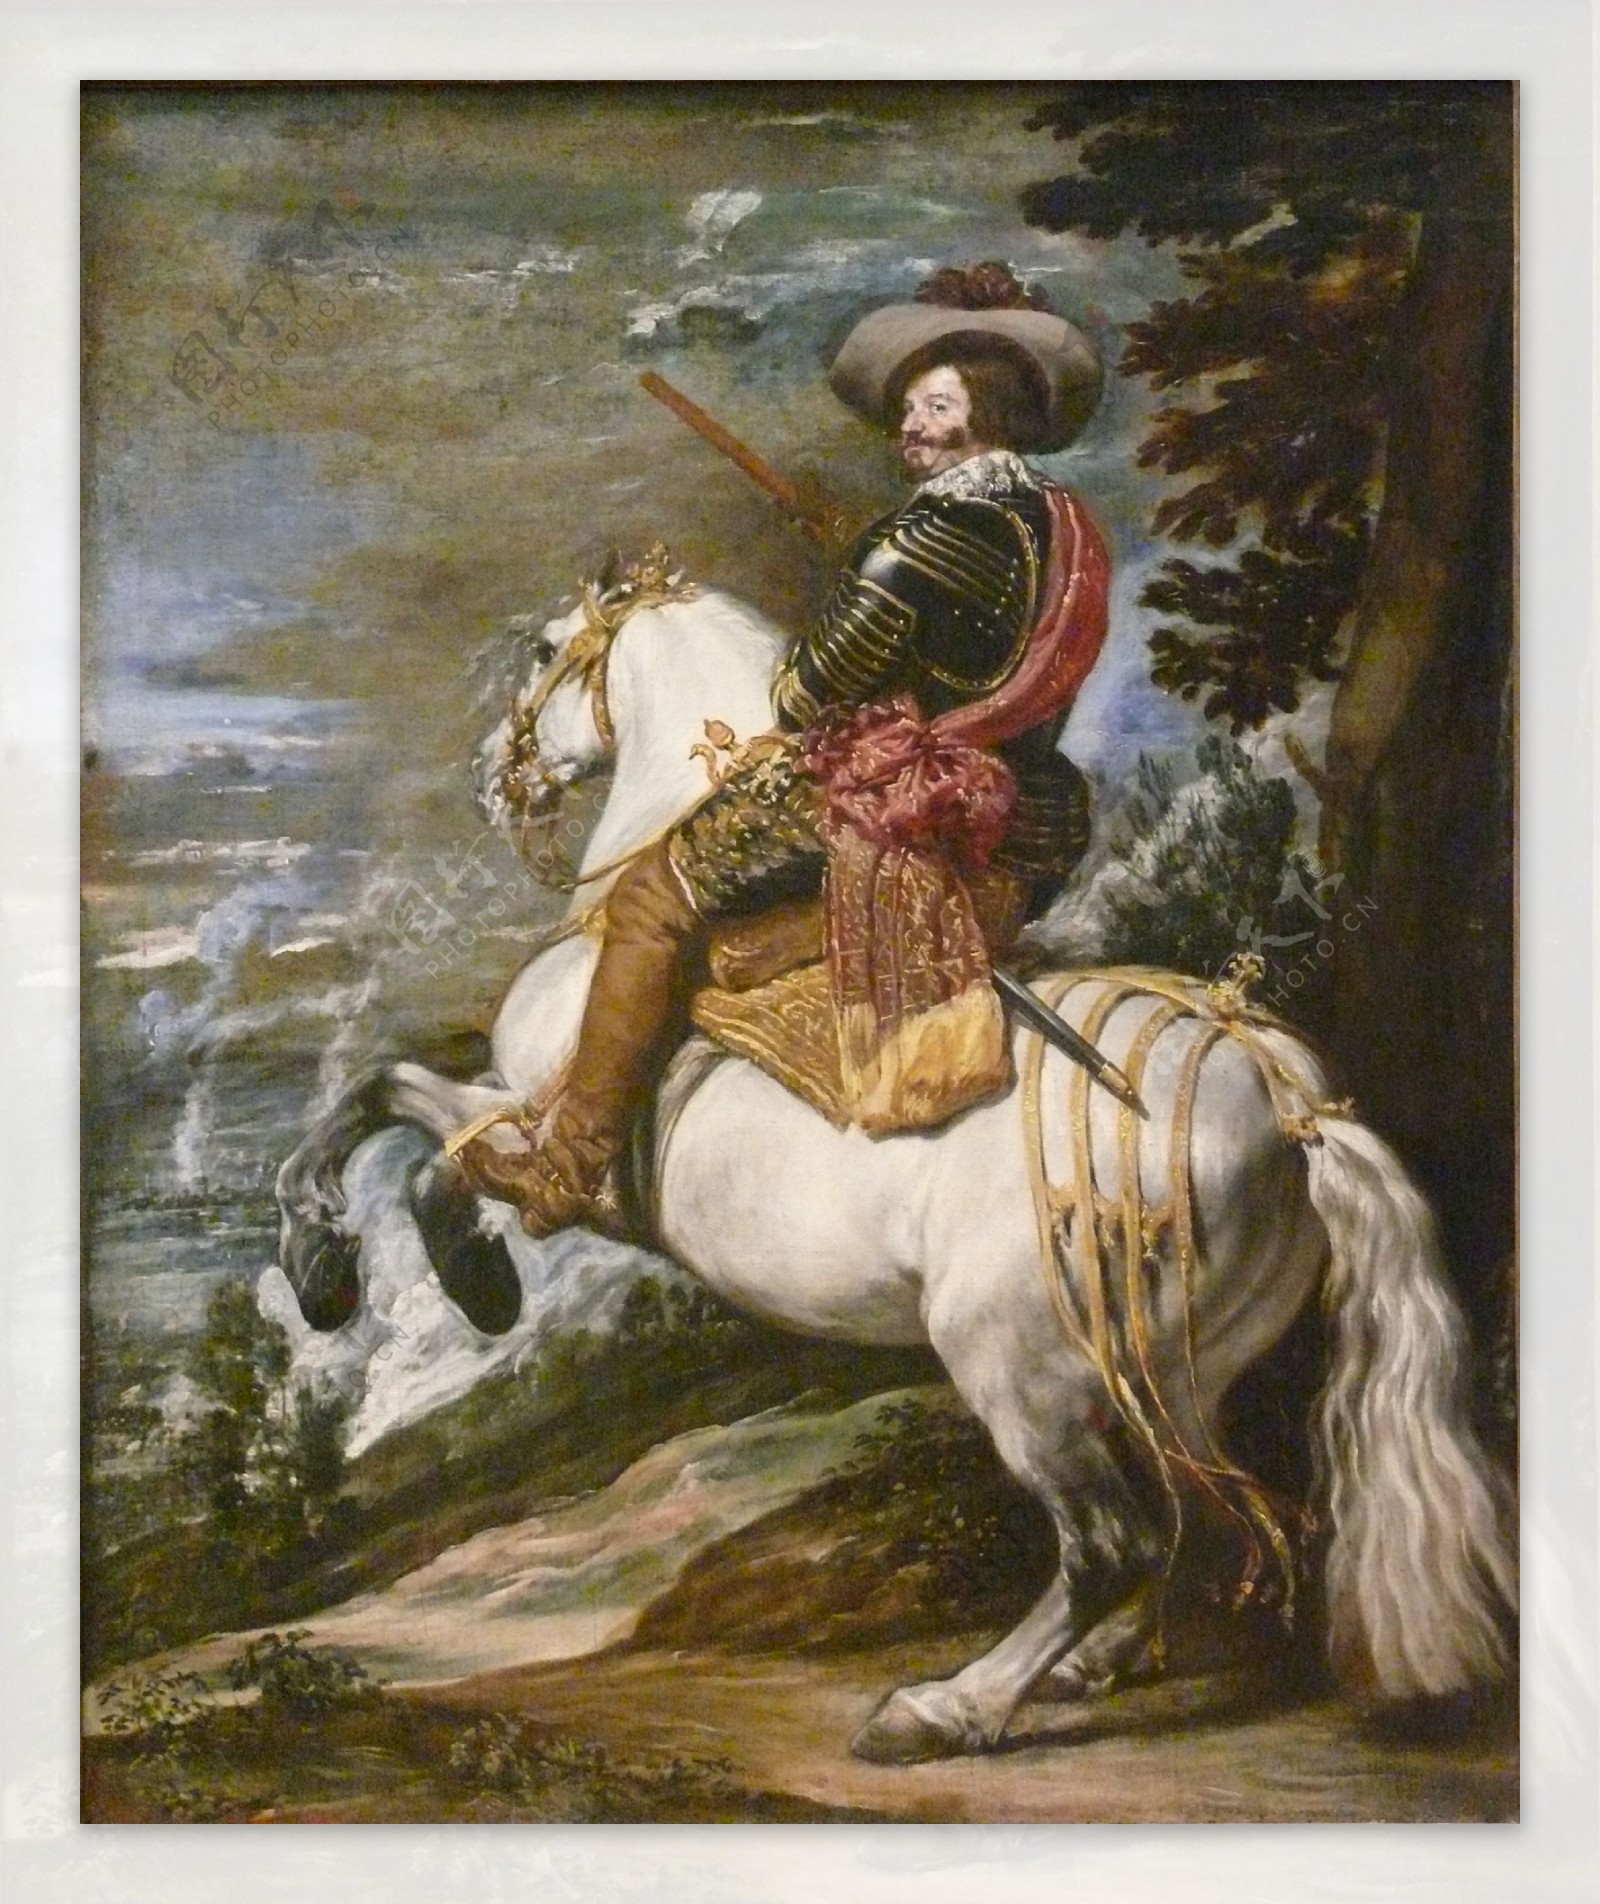 骑马的人物肖像画图片